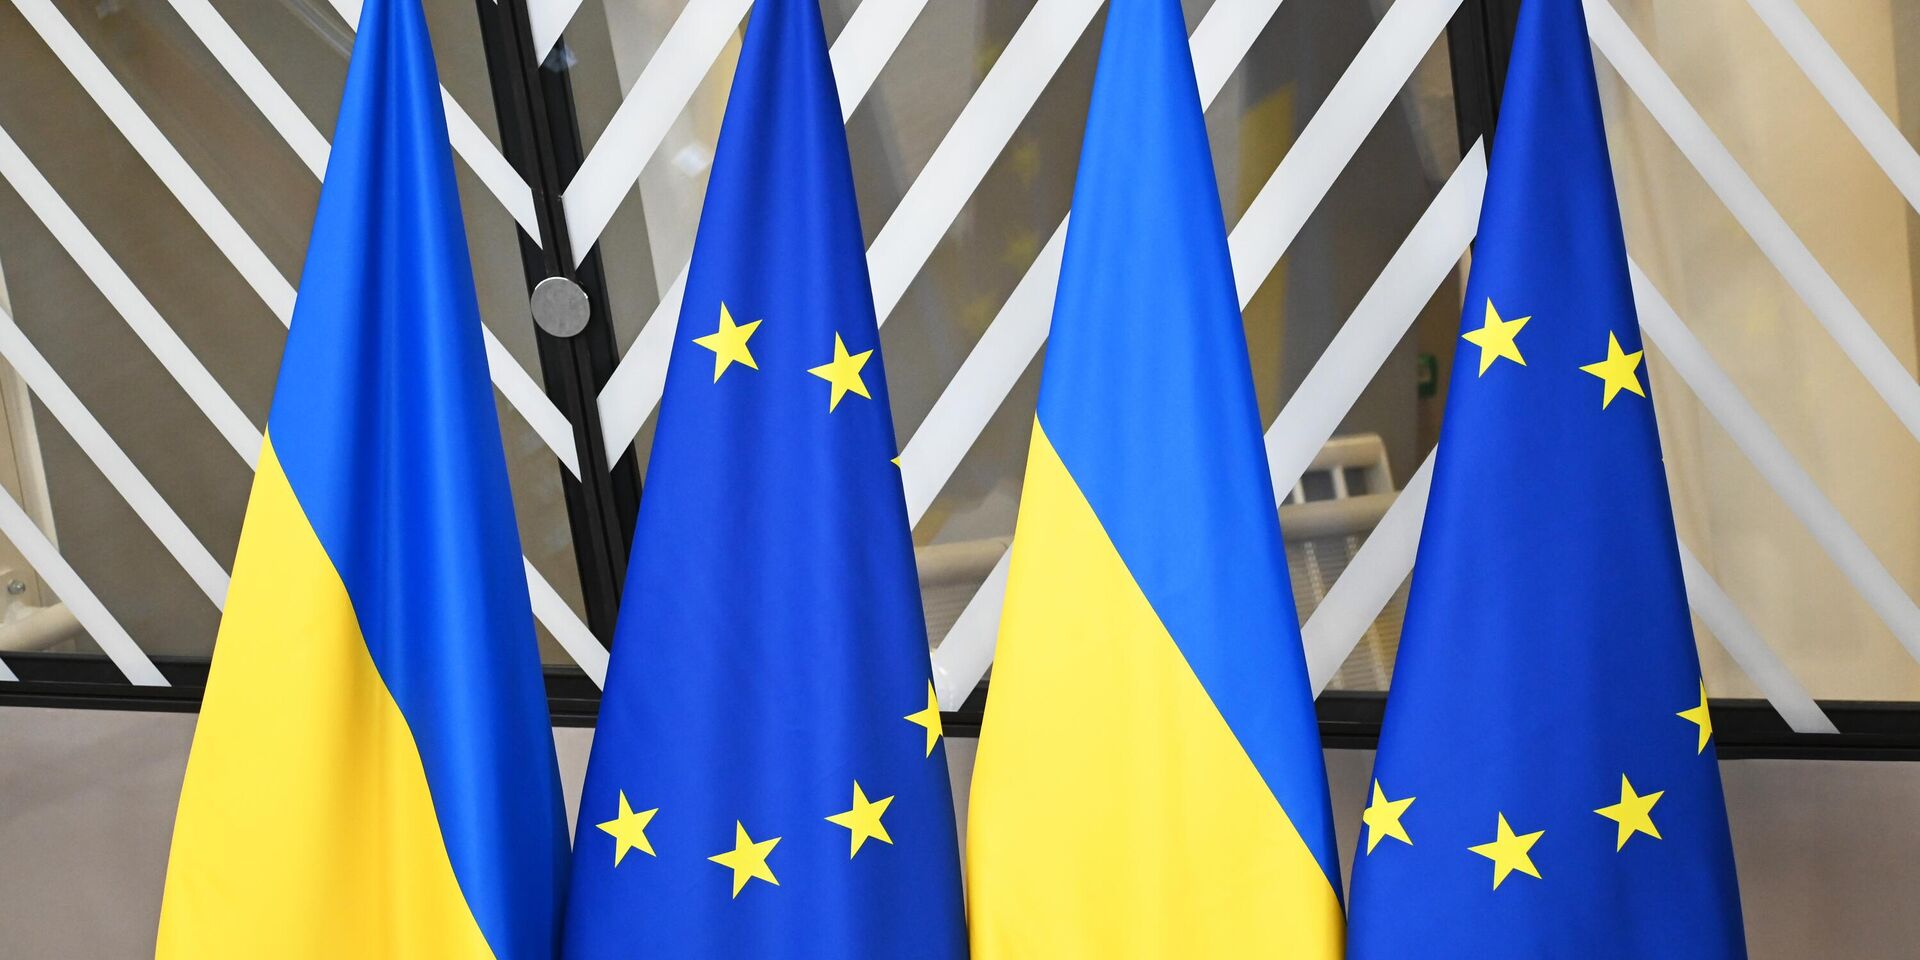 Участники саммита по Украине стремятся к широкому консенсусу, чтобы склонить Россию к прекращению конфликта